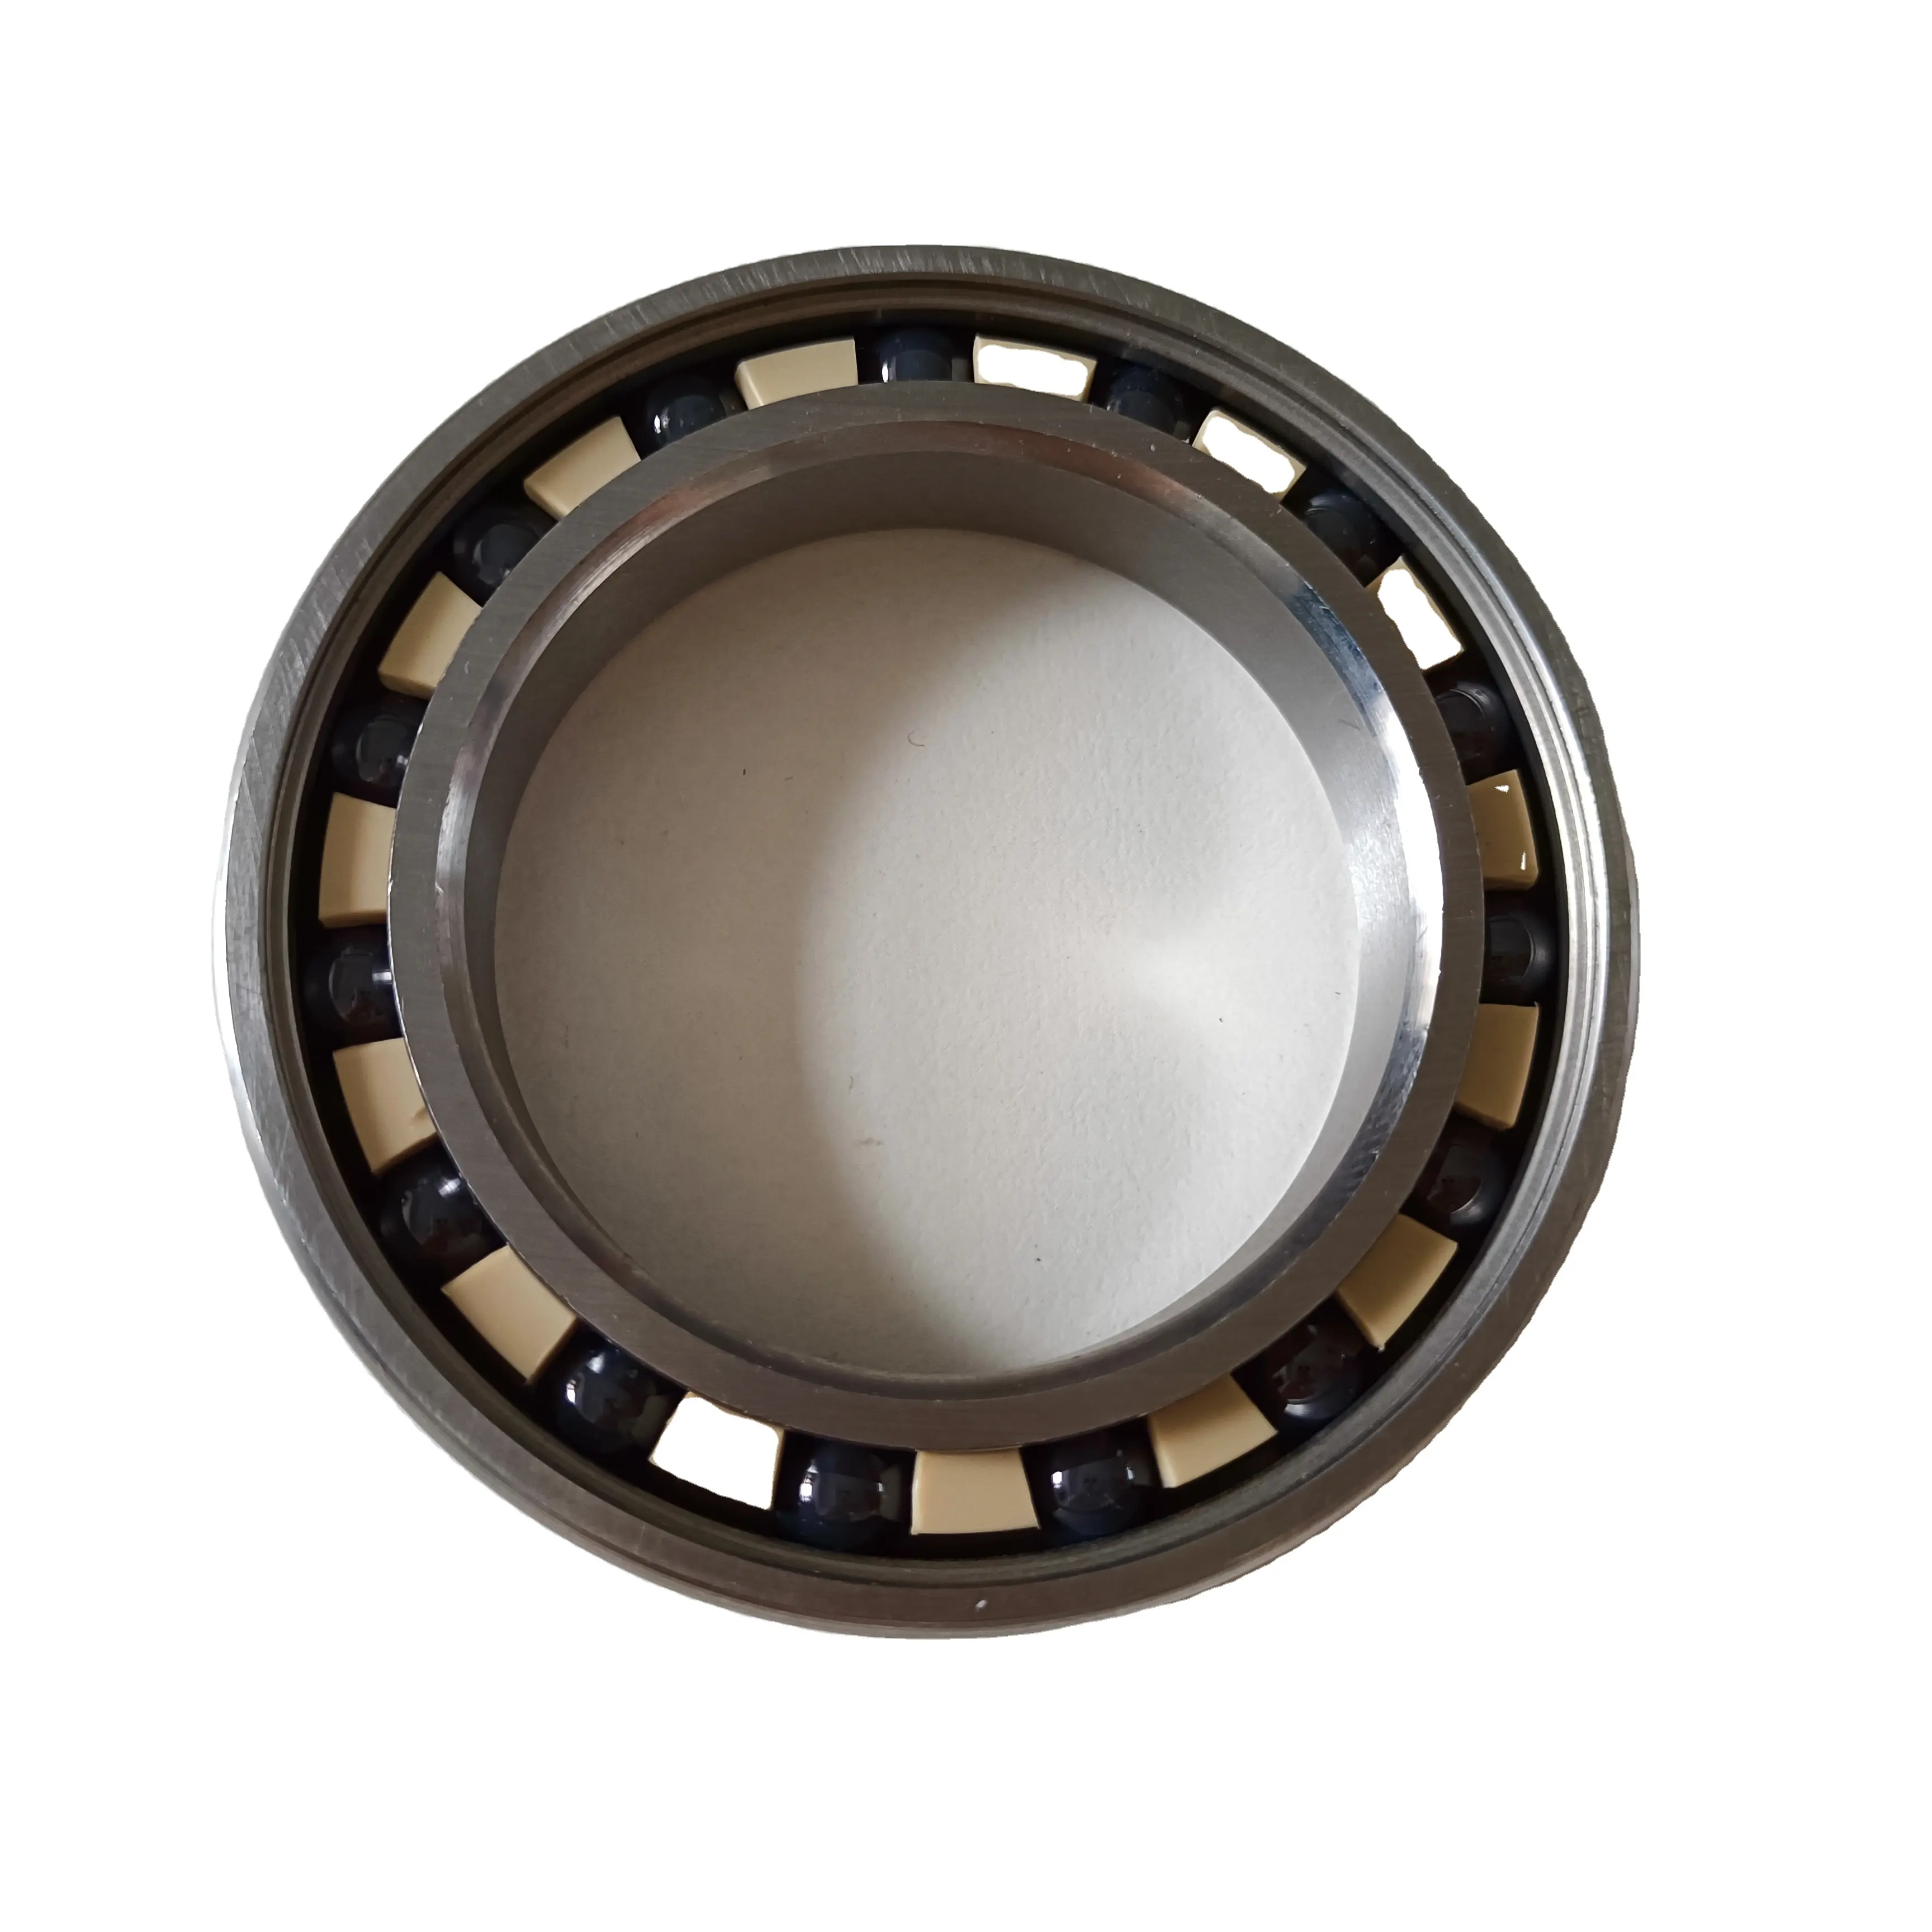 Cuscinetti a sfera a scanalatura profonda per macchina 6300rs cuscinetti in ceramica ibrida in acciaio inossidabile per 6300 63002rs